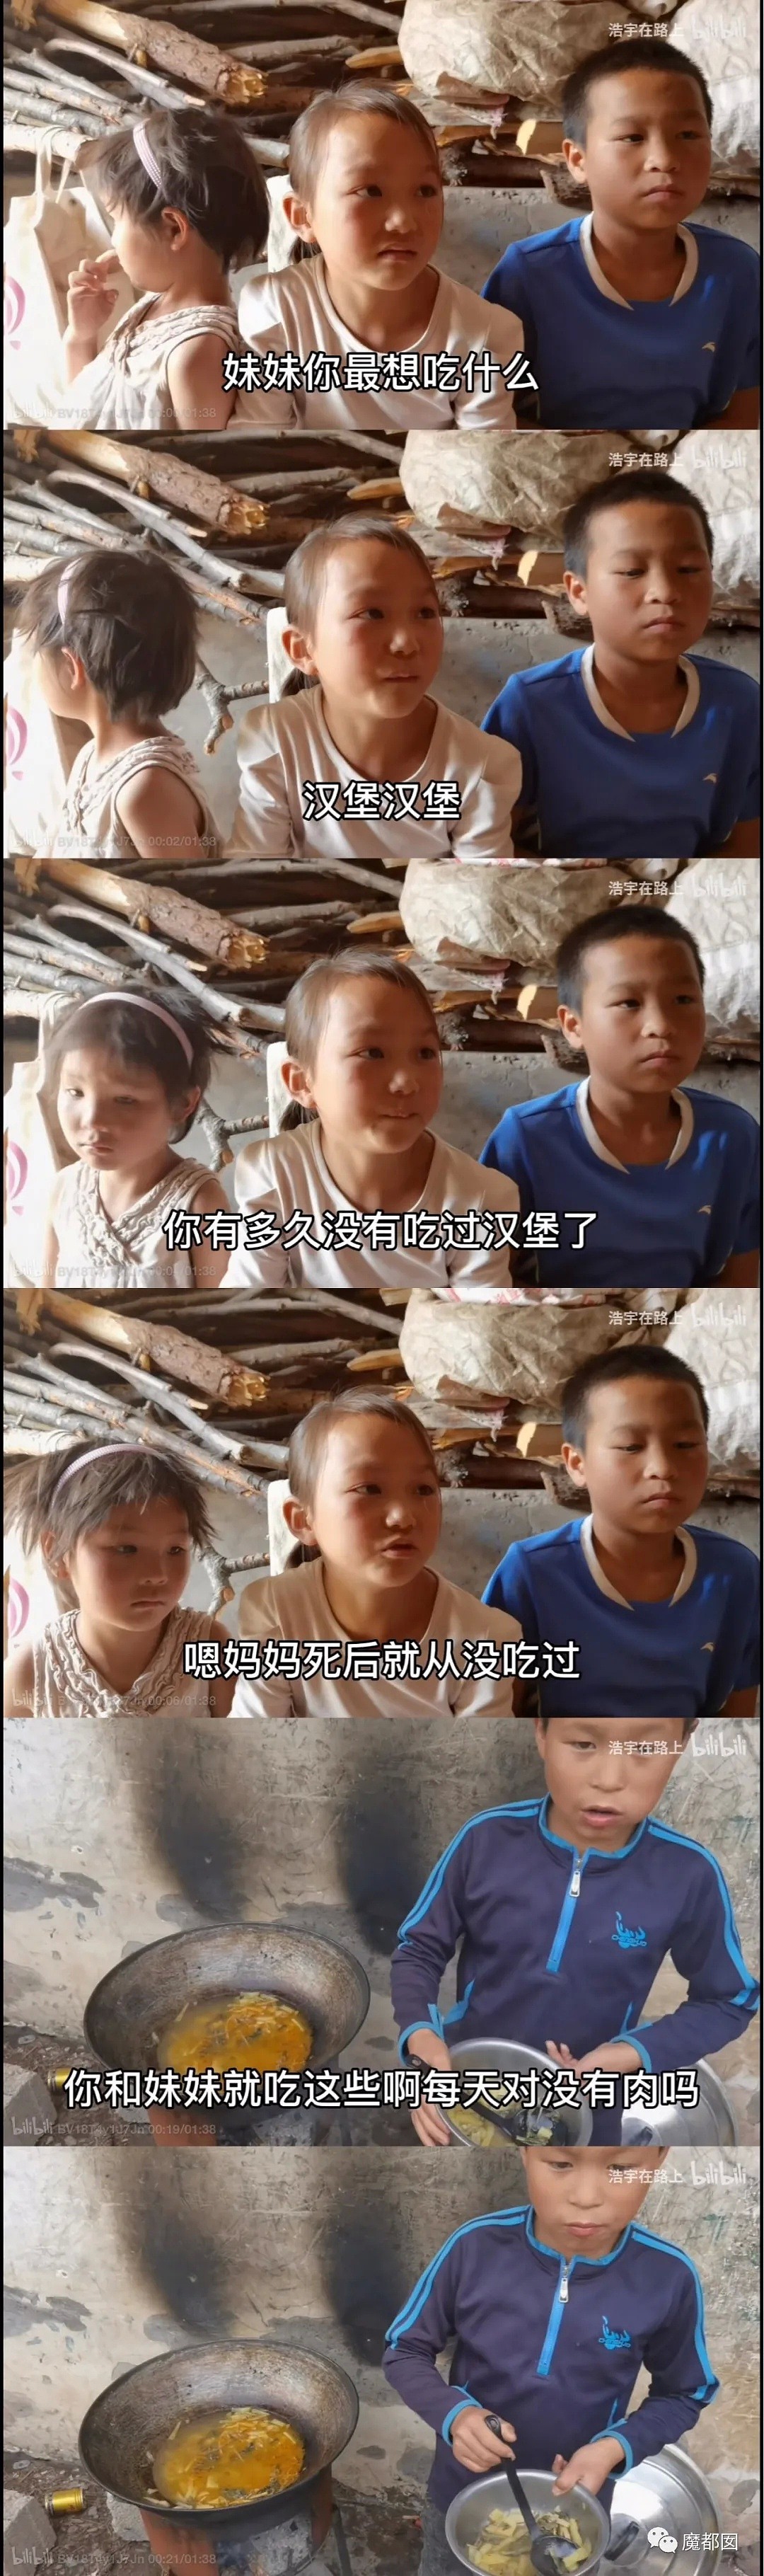 散装卫生巾热议！时至今日中国仍有忍受摩阴疼痛用草纸垫的女性（组图） - 72